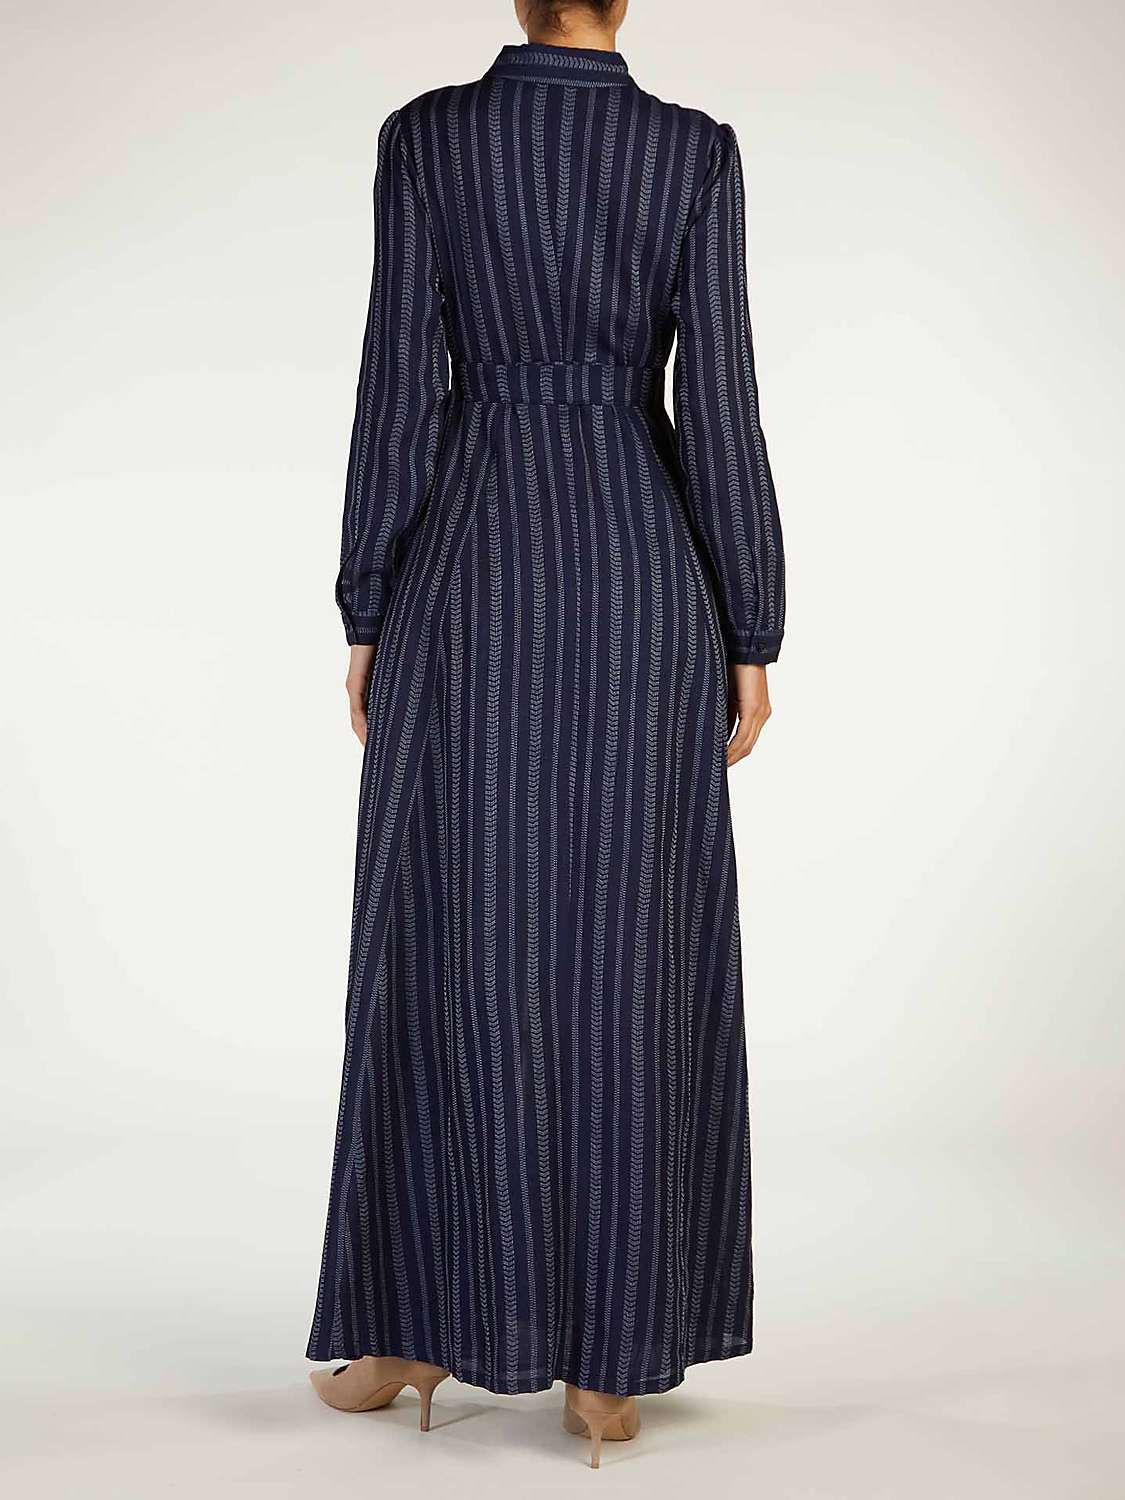 Buy Aab Herringbone Weave Maxi Dress, Navy Multi Online at johnlewis.com